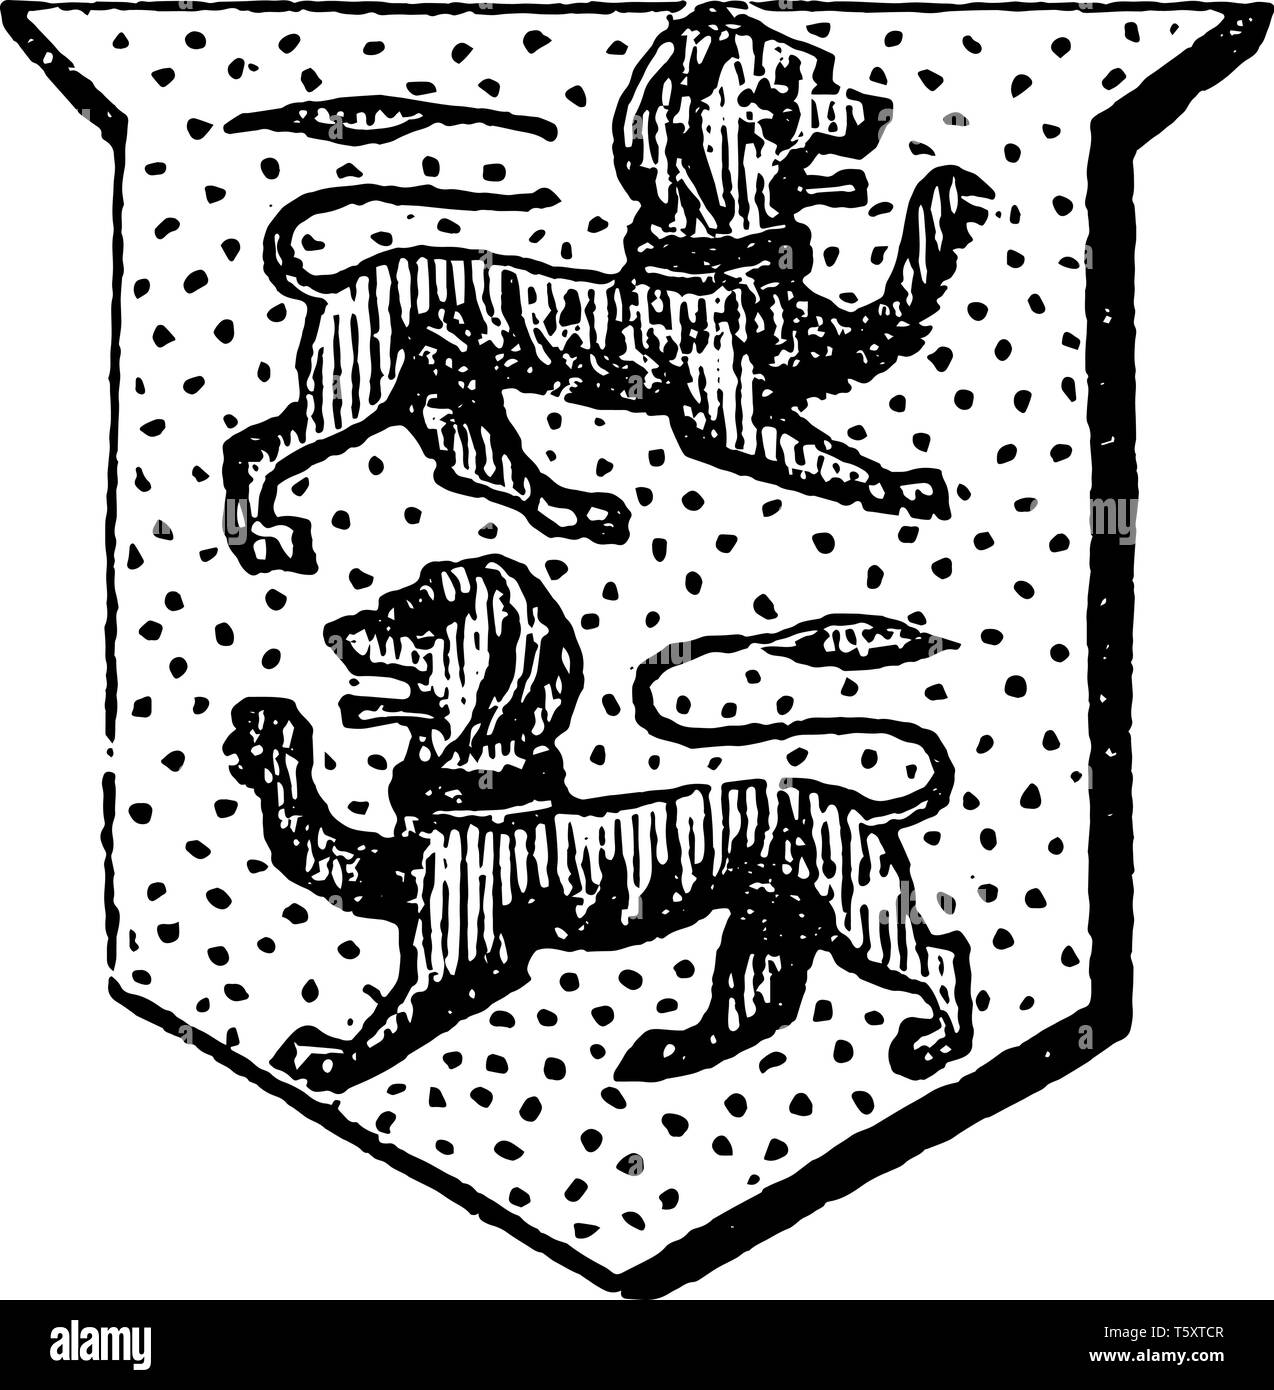 Compteur Lions Passant ont deux des animaux passent la contrairement aux autres, chaque dessin de ligne vintage ou gravure illustration. Illustration de Vecteur